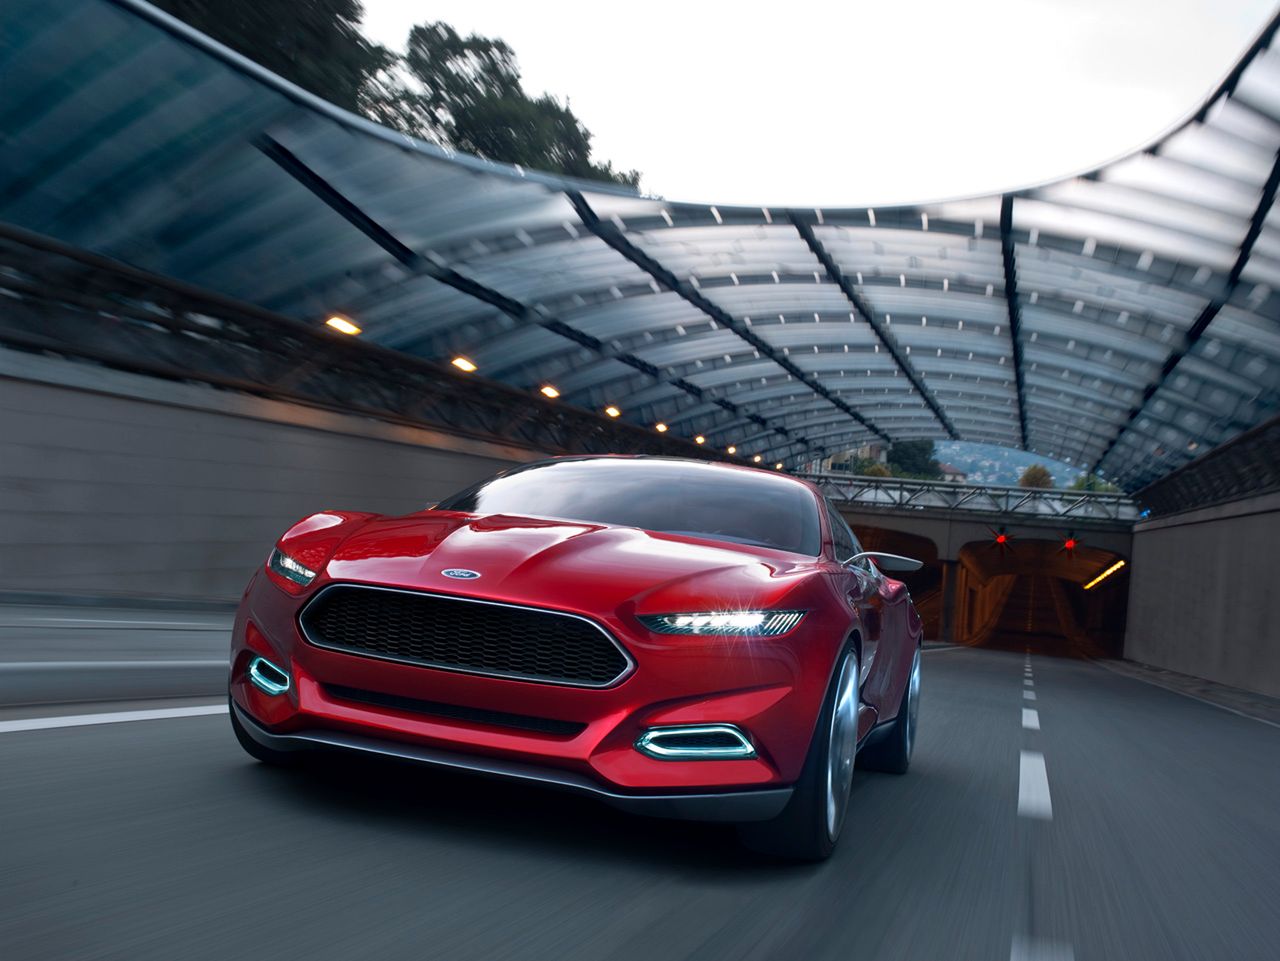 Nowy Ford Mustang - garść informacji o gamie silnikowej